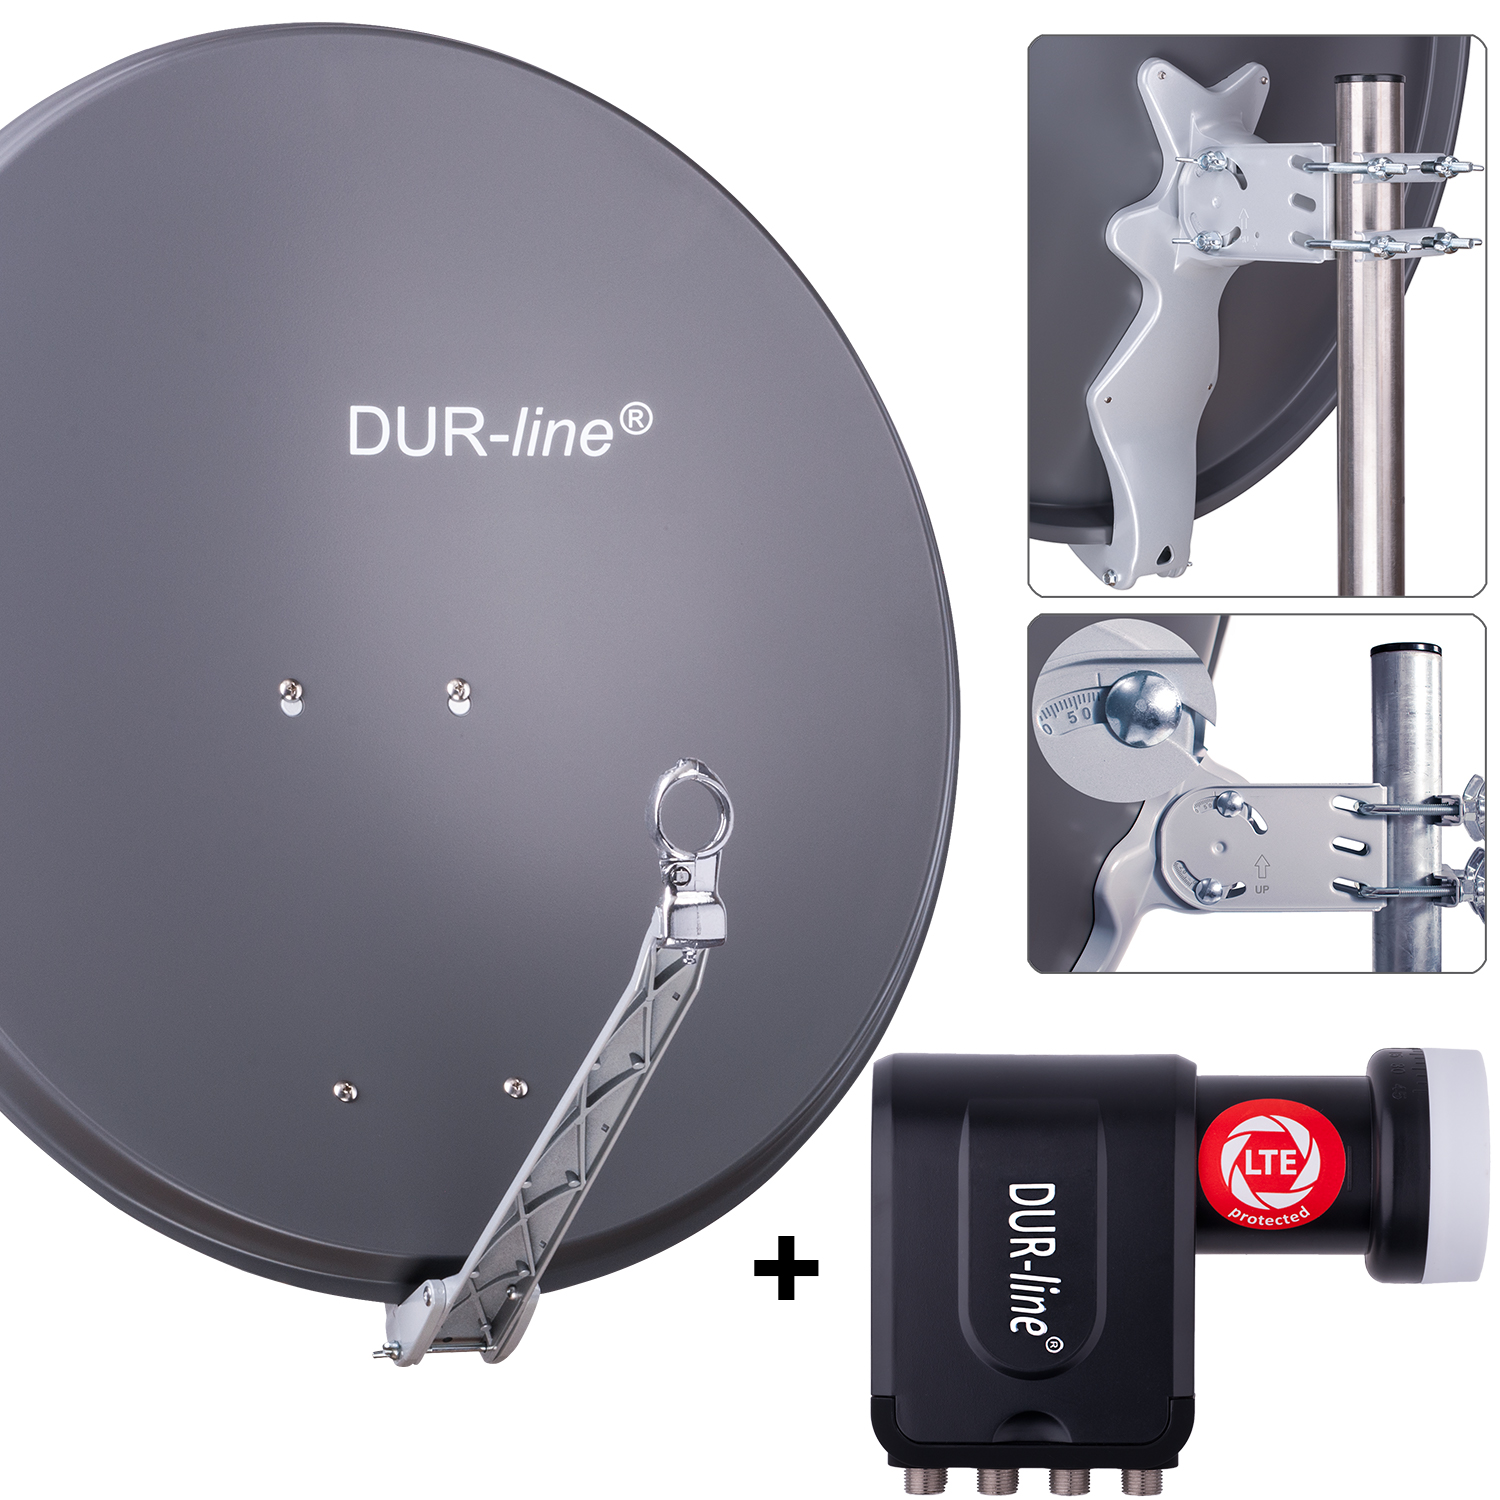 Qualitäts-Alu-Satelliten-Komplettanlage Select 75/80cm Spiegel/Schüssel Hellgrau Octo LNB DUR-line 8 Teilnehmer Set für 8 Receiver/TV Neuste Technik, DVB-S2, 4K, 3D 